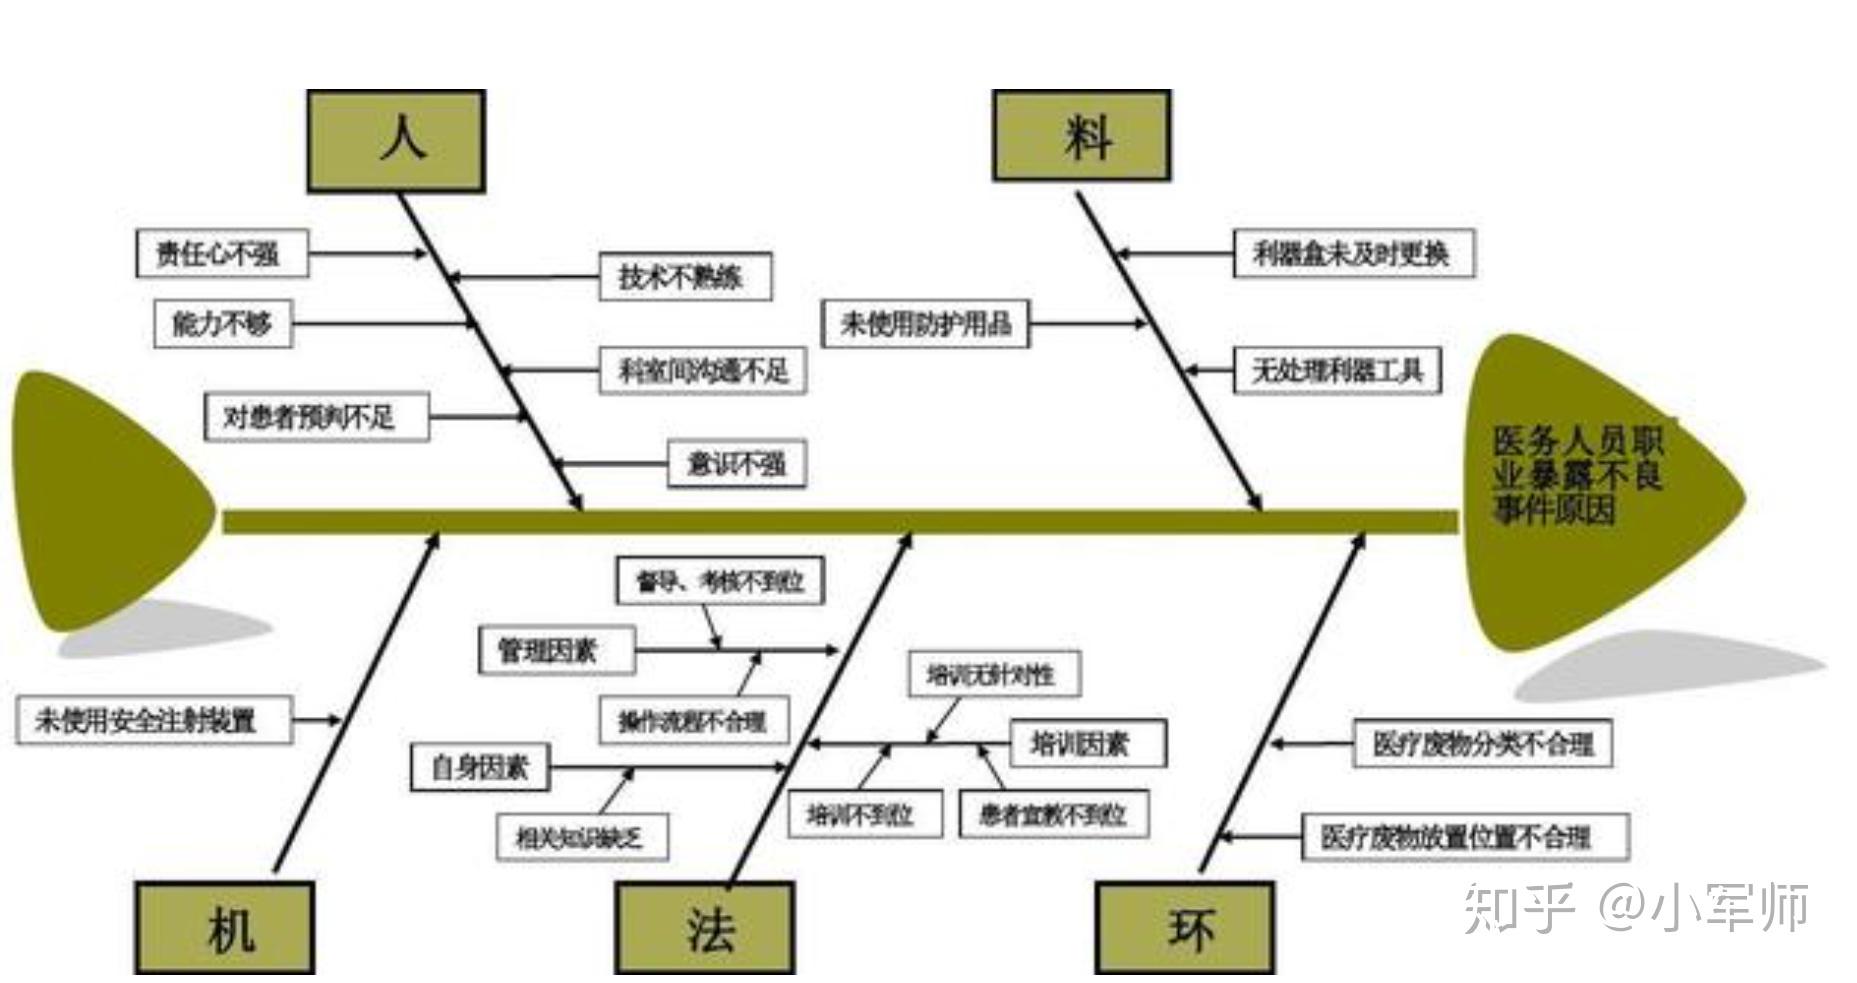 3 鱼骨图分析法(cause & effect/fishbone diagram)